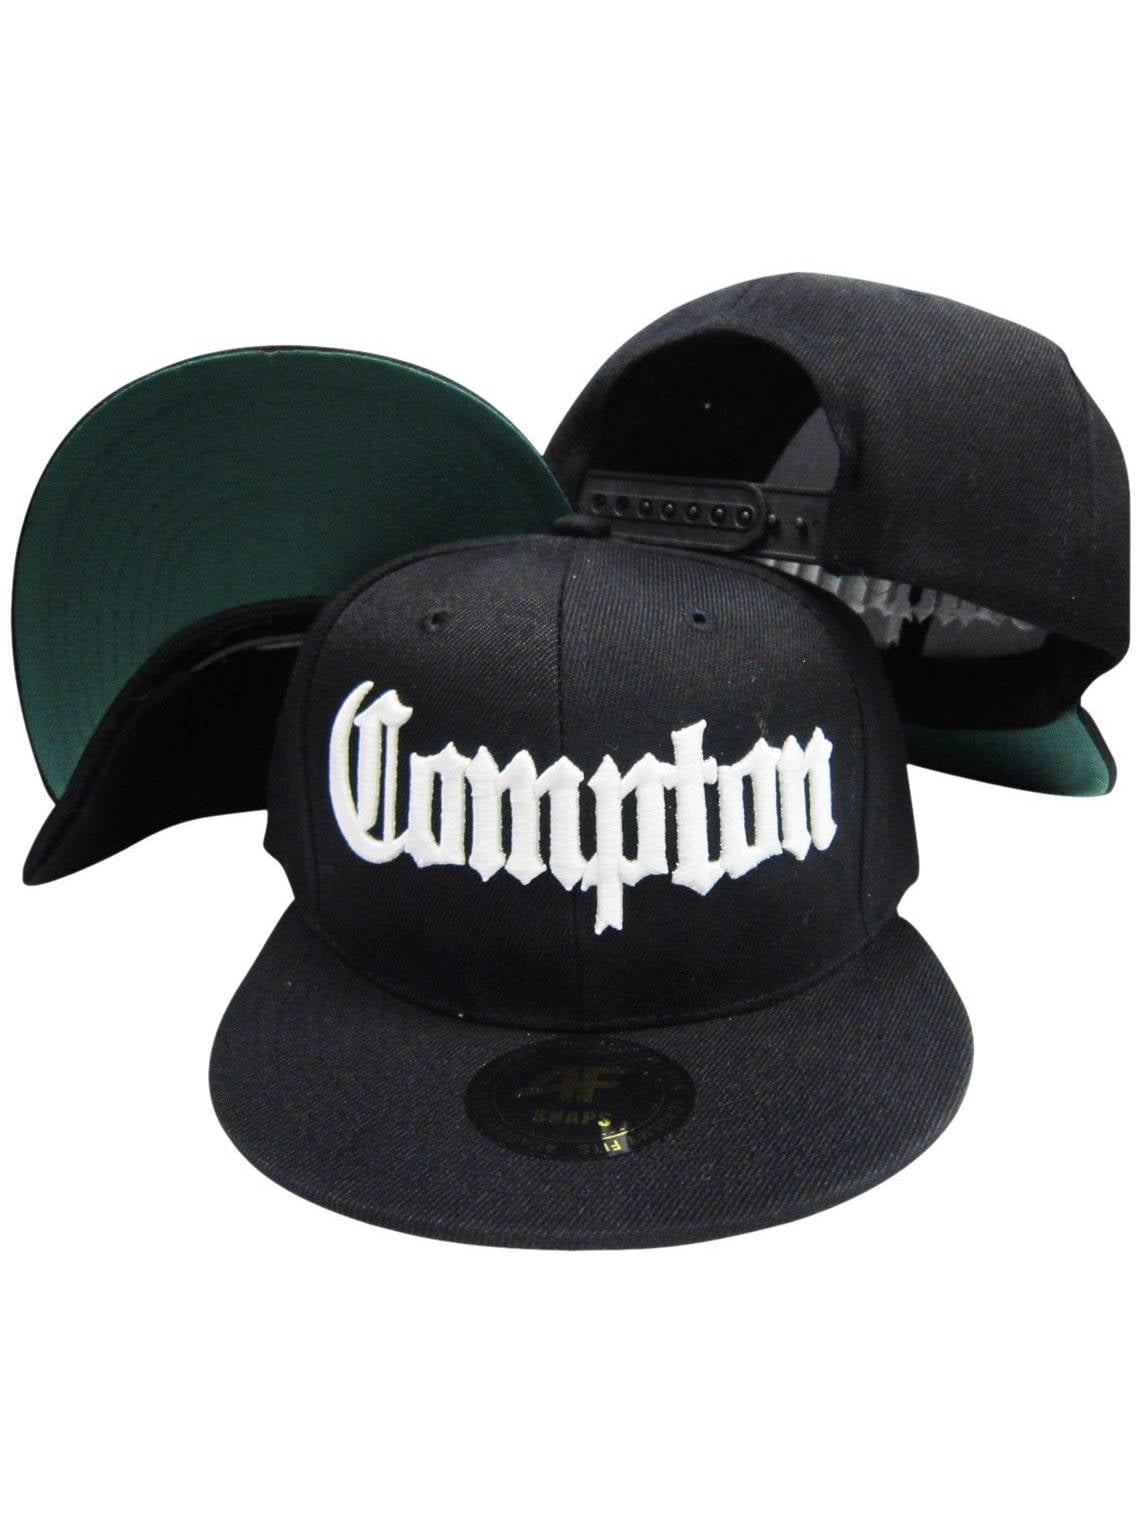 zingen Trouw wetenschapper Compton Old English Black Adjustable Flatbill Snapback Hat w sunglass -  Walmart.com